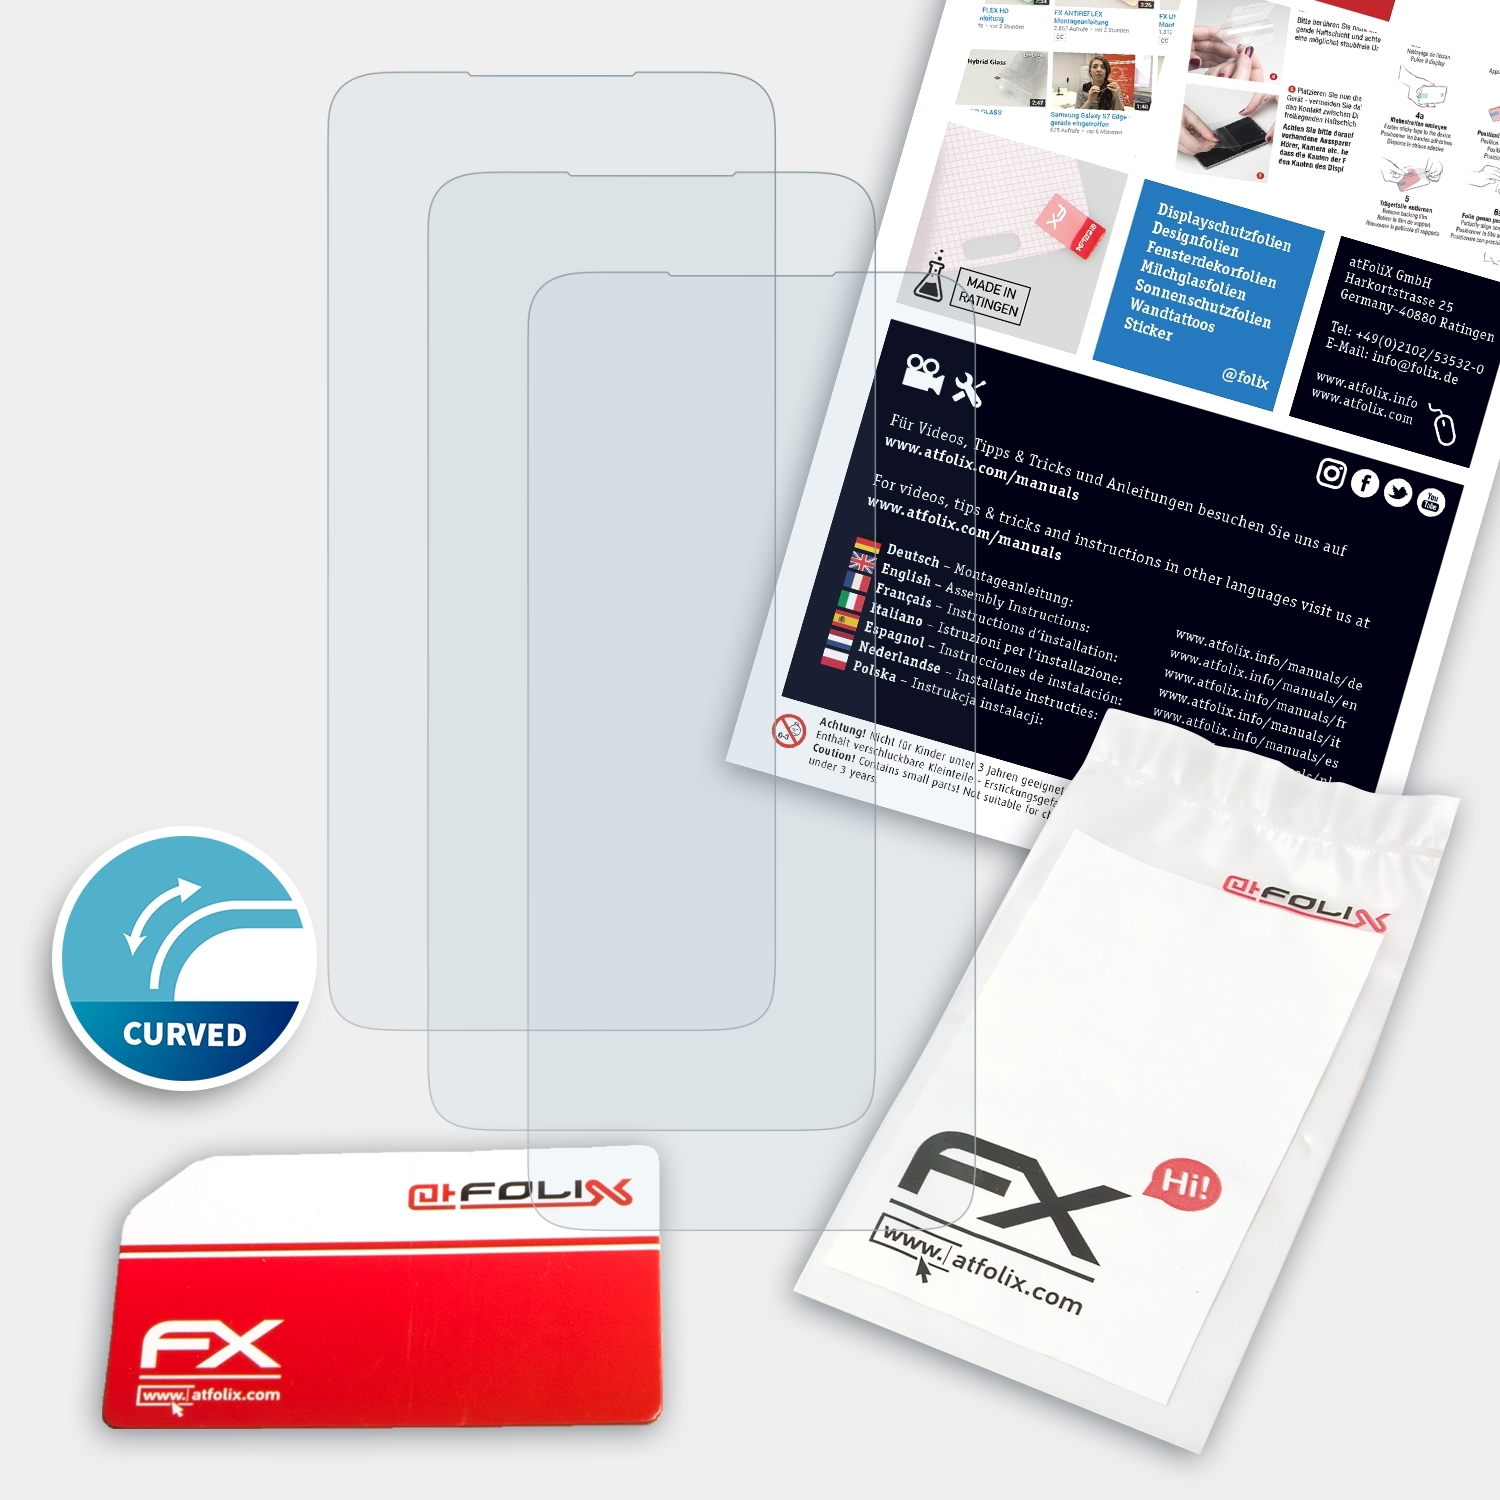 OnePlus 3x Displayschutz(für 7T FX-ActiFleX Pro) ATFOLIX